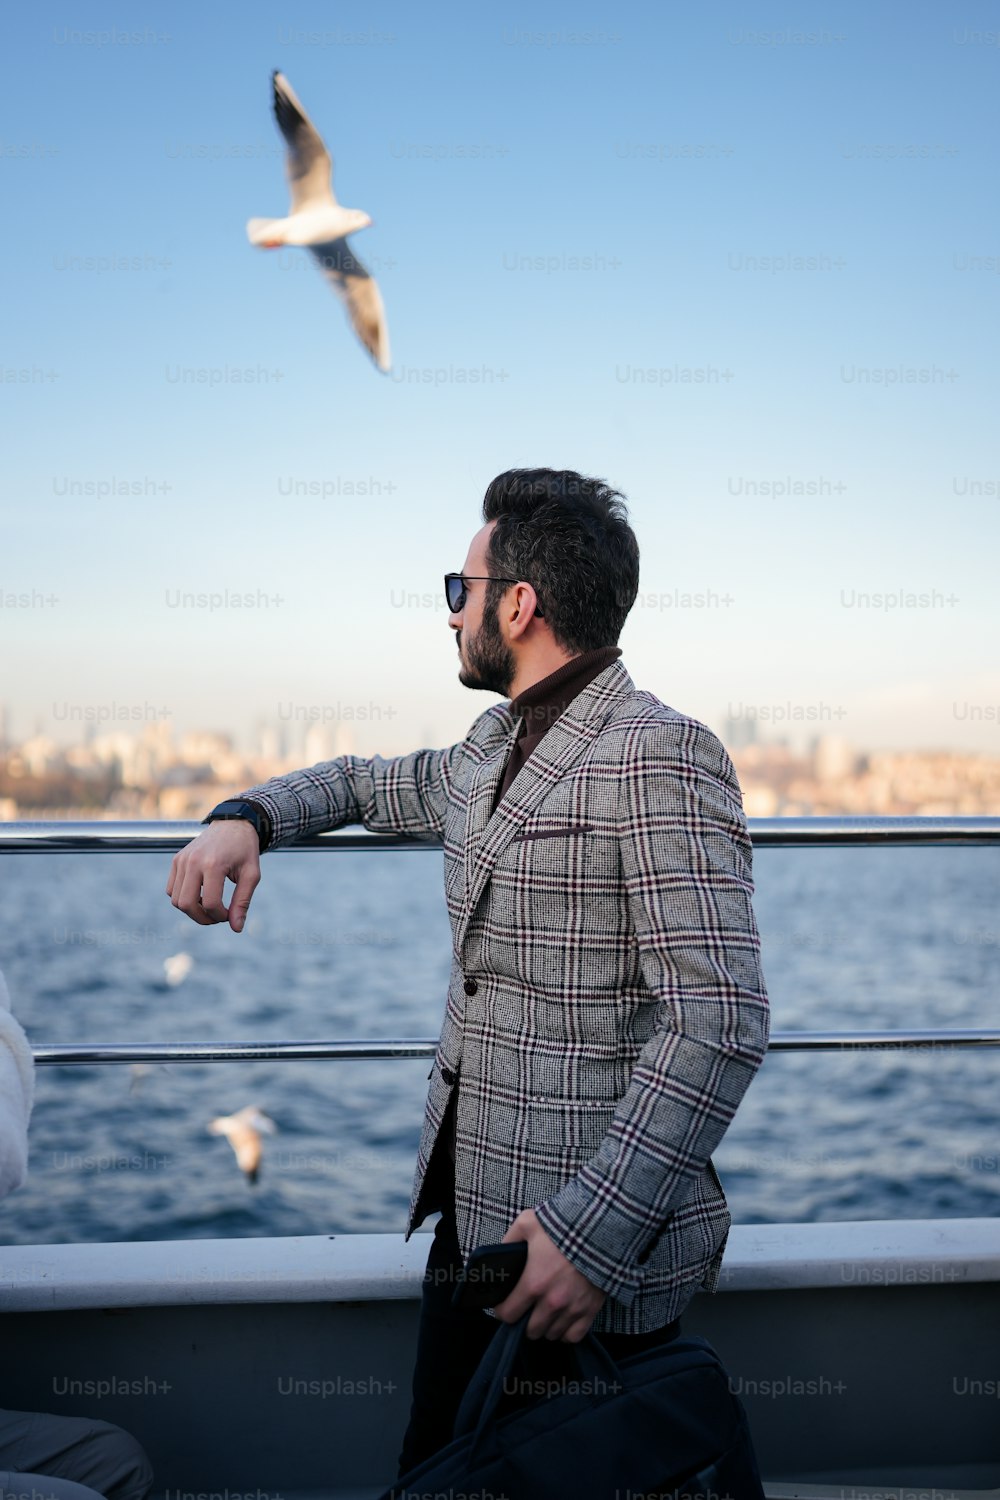 Ein Mann steht auf einem Boot und schaut auf eine Möwe